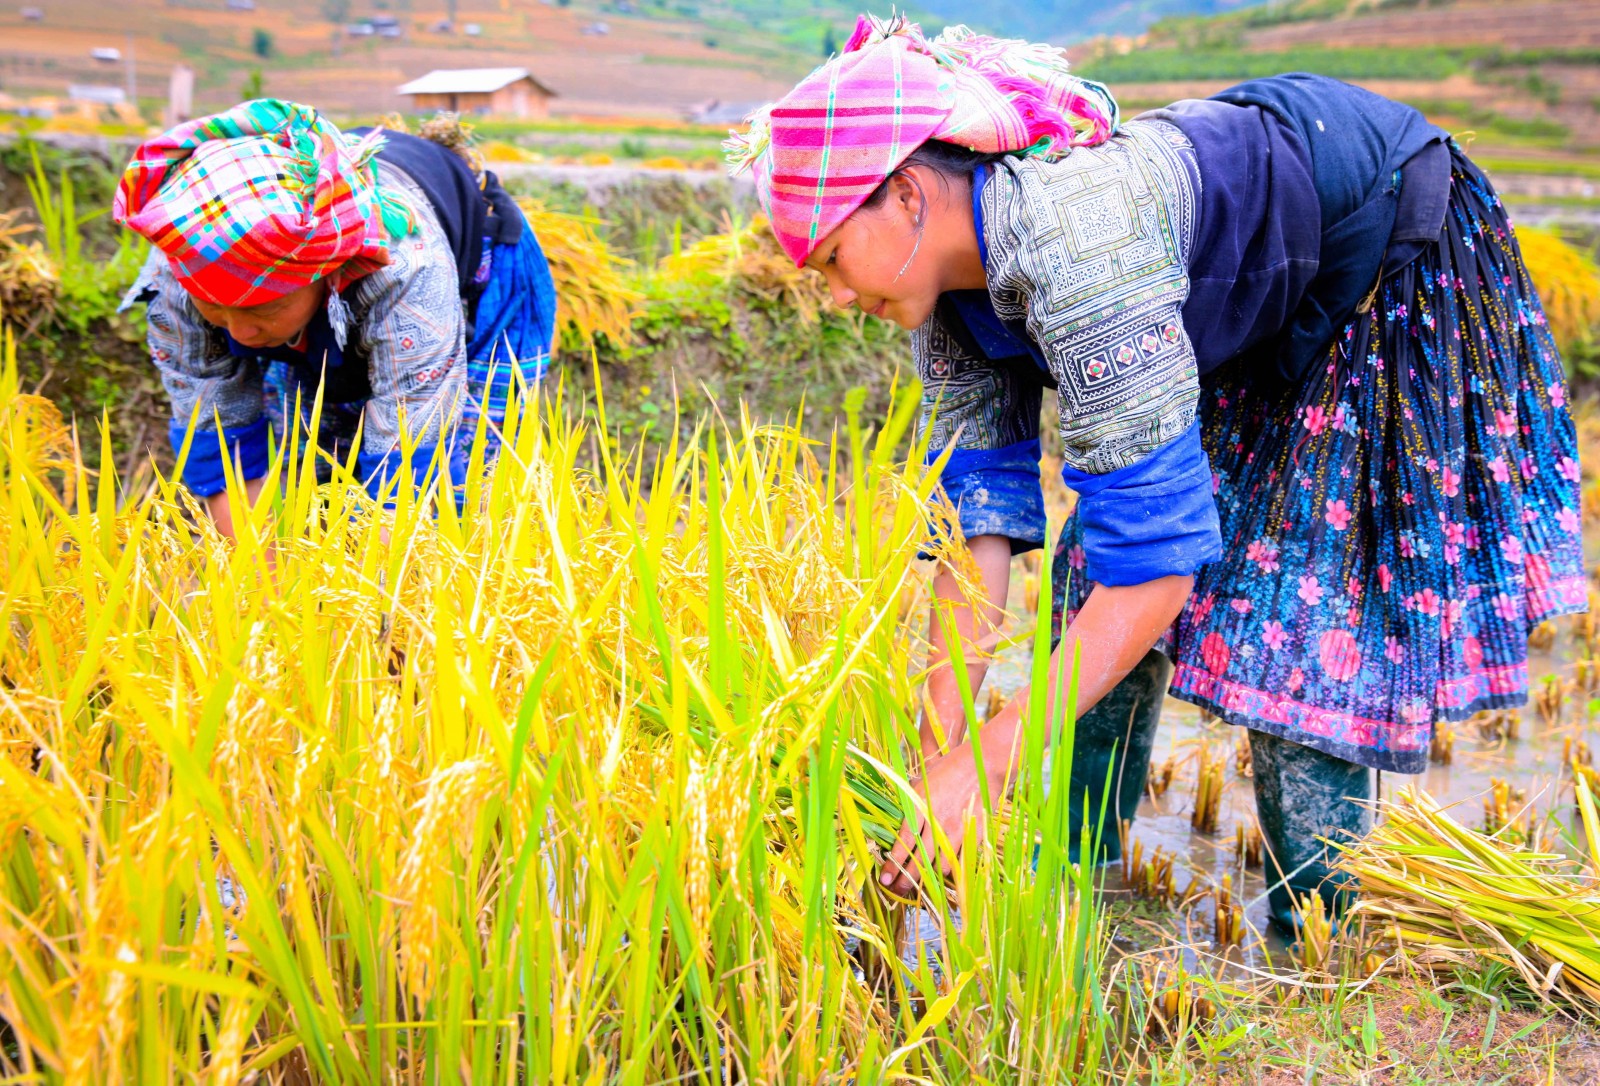 Bên đám mạ non xanh mơn mởn giữa vùng đất vàng nâu, vài cô gái dân tộc Mông váy áo sặc sỡ đang khom người gặt nốt những đám lúa trồng ở các thửa ruộng thấp…